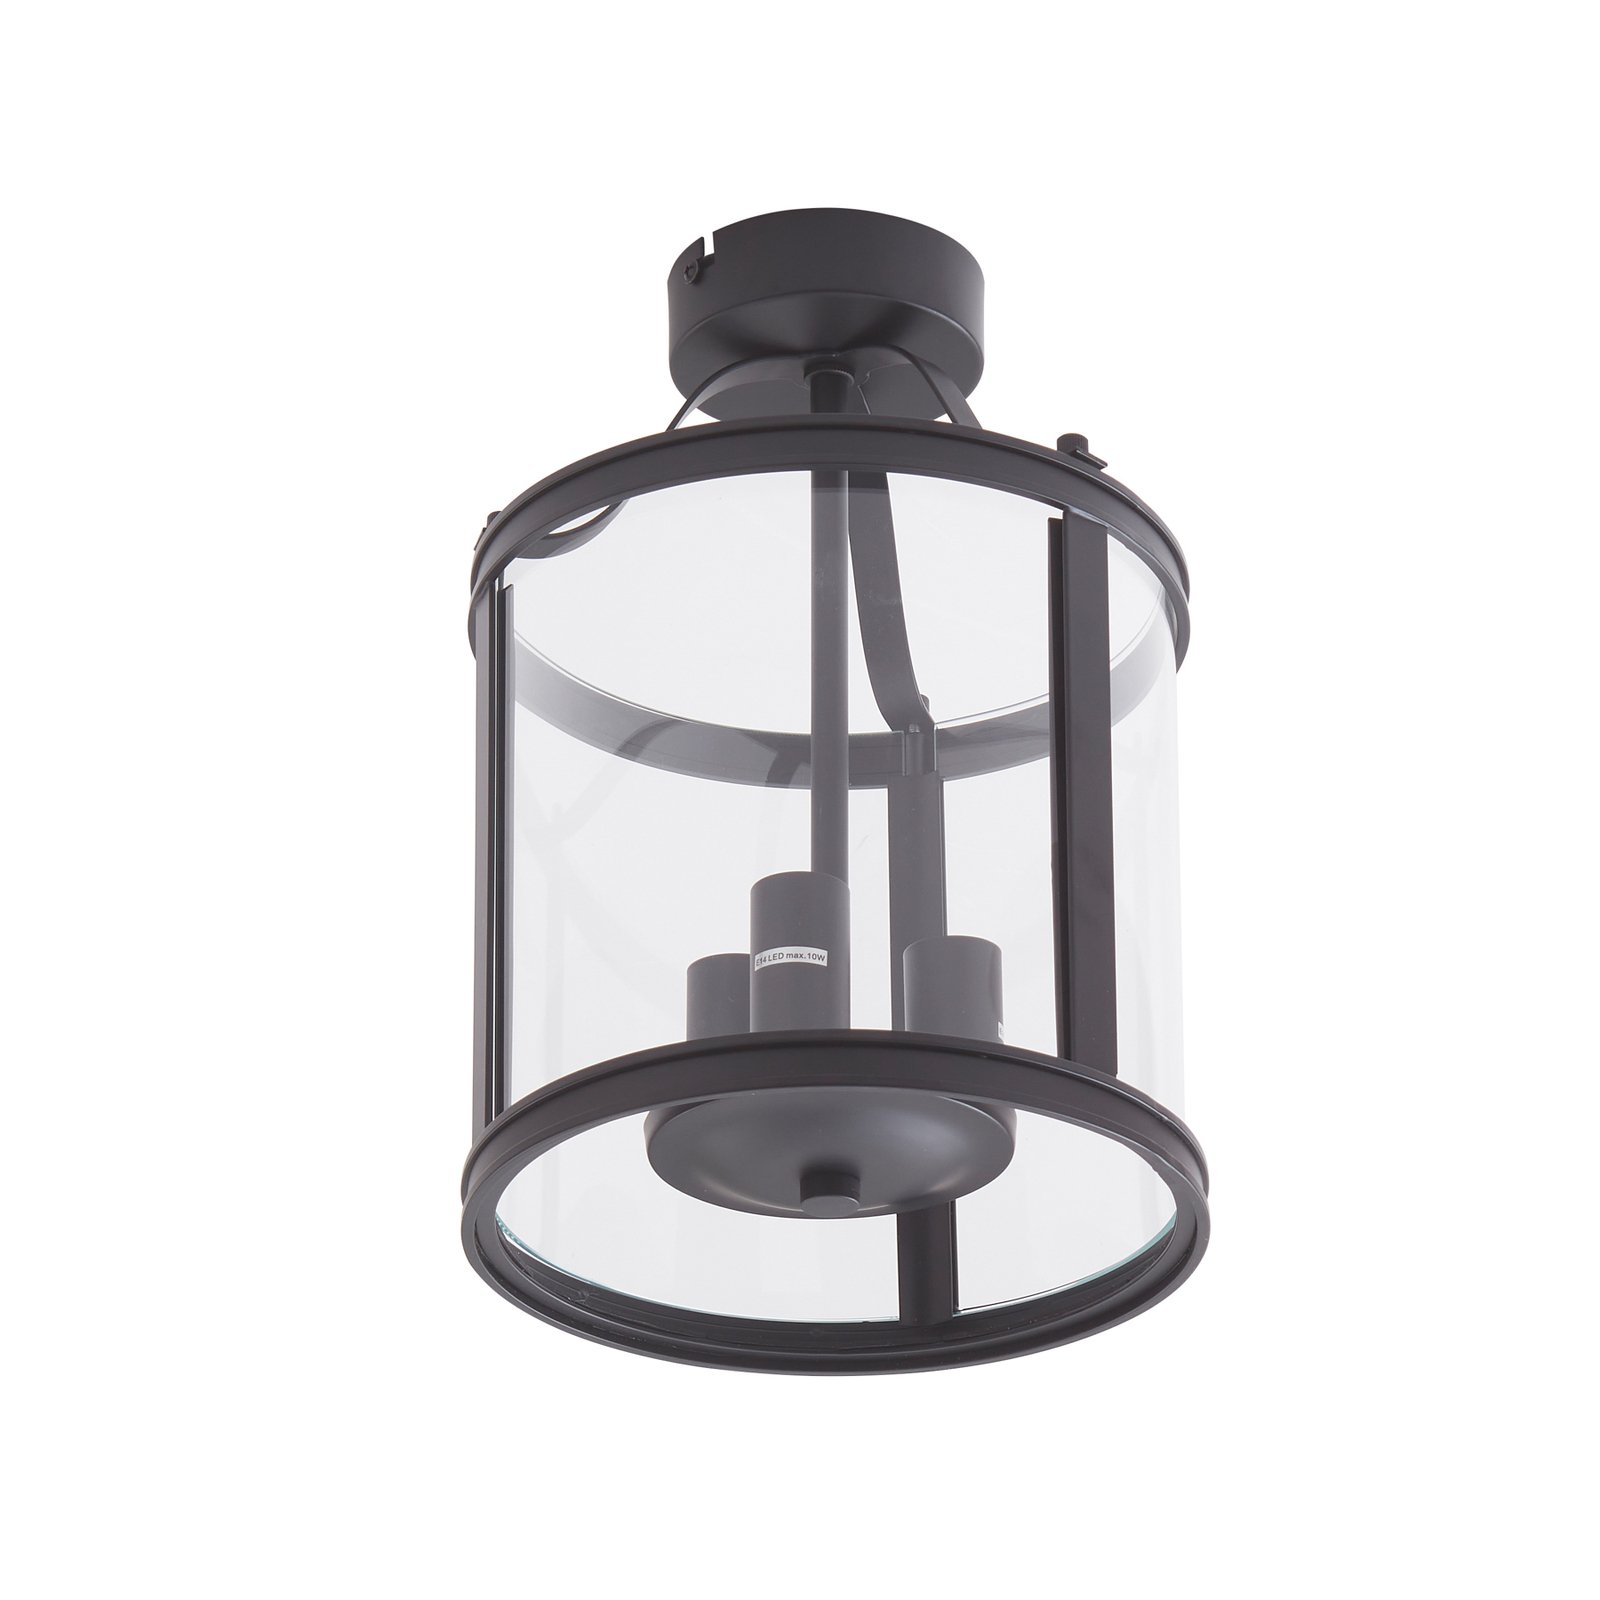 Lucande Deckenlampe Eryk, Ø 23 cm, schwarz, Glas, 3-flammig